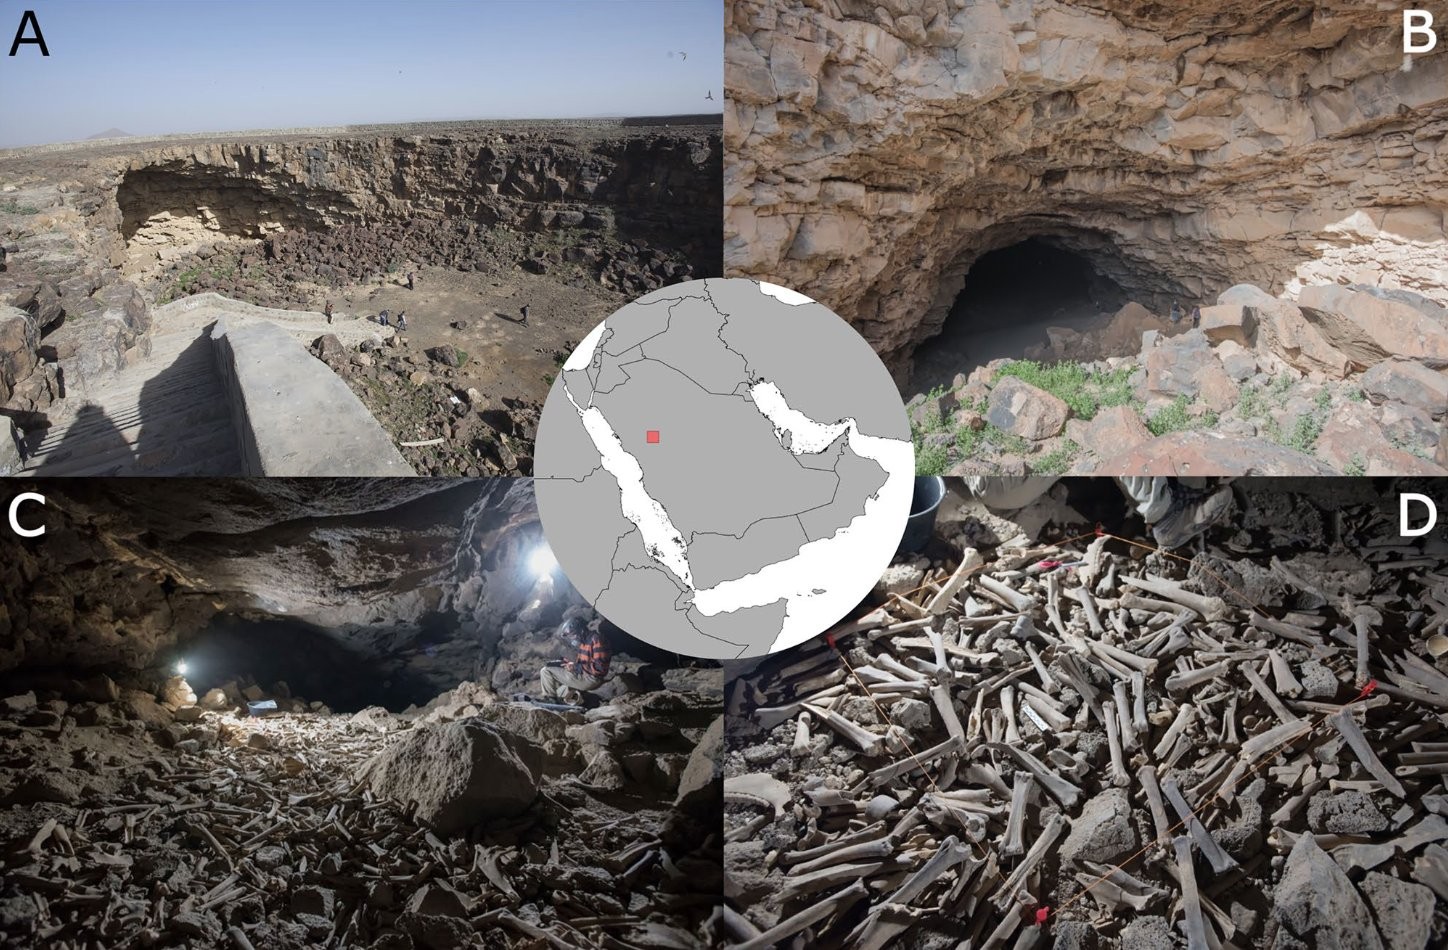 Pilha de ossos coletados por hienas encontrados nos túneis de lava na Arábia Saudita  (Foto: Reprodução/@StewieStewart13/Twitter)